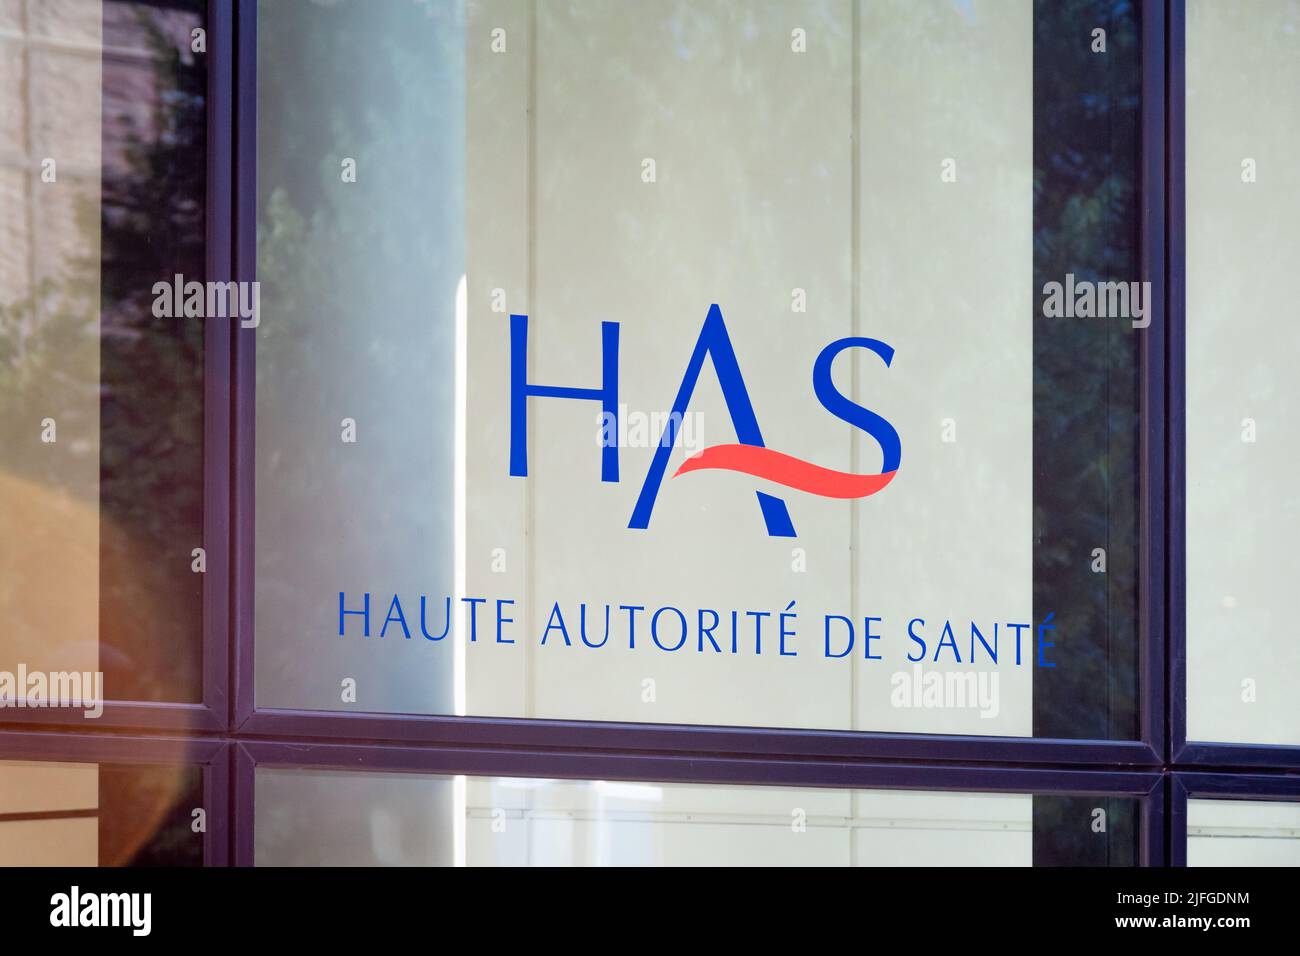 Logotipo en el edificio que alberga la sede de la Alta Autorité de Santé (HAS), autoridad pública independiente francesa en el ámbito de la salud Foto de stock